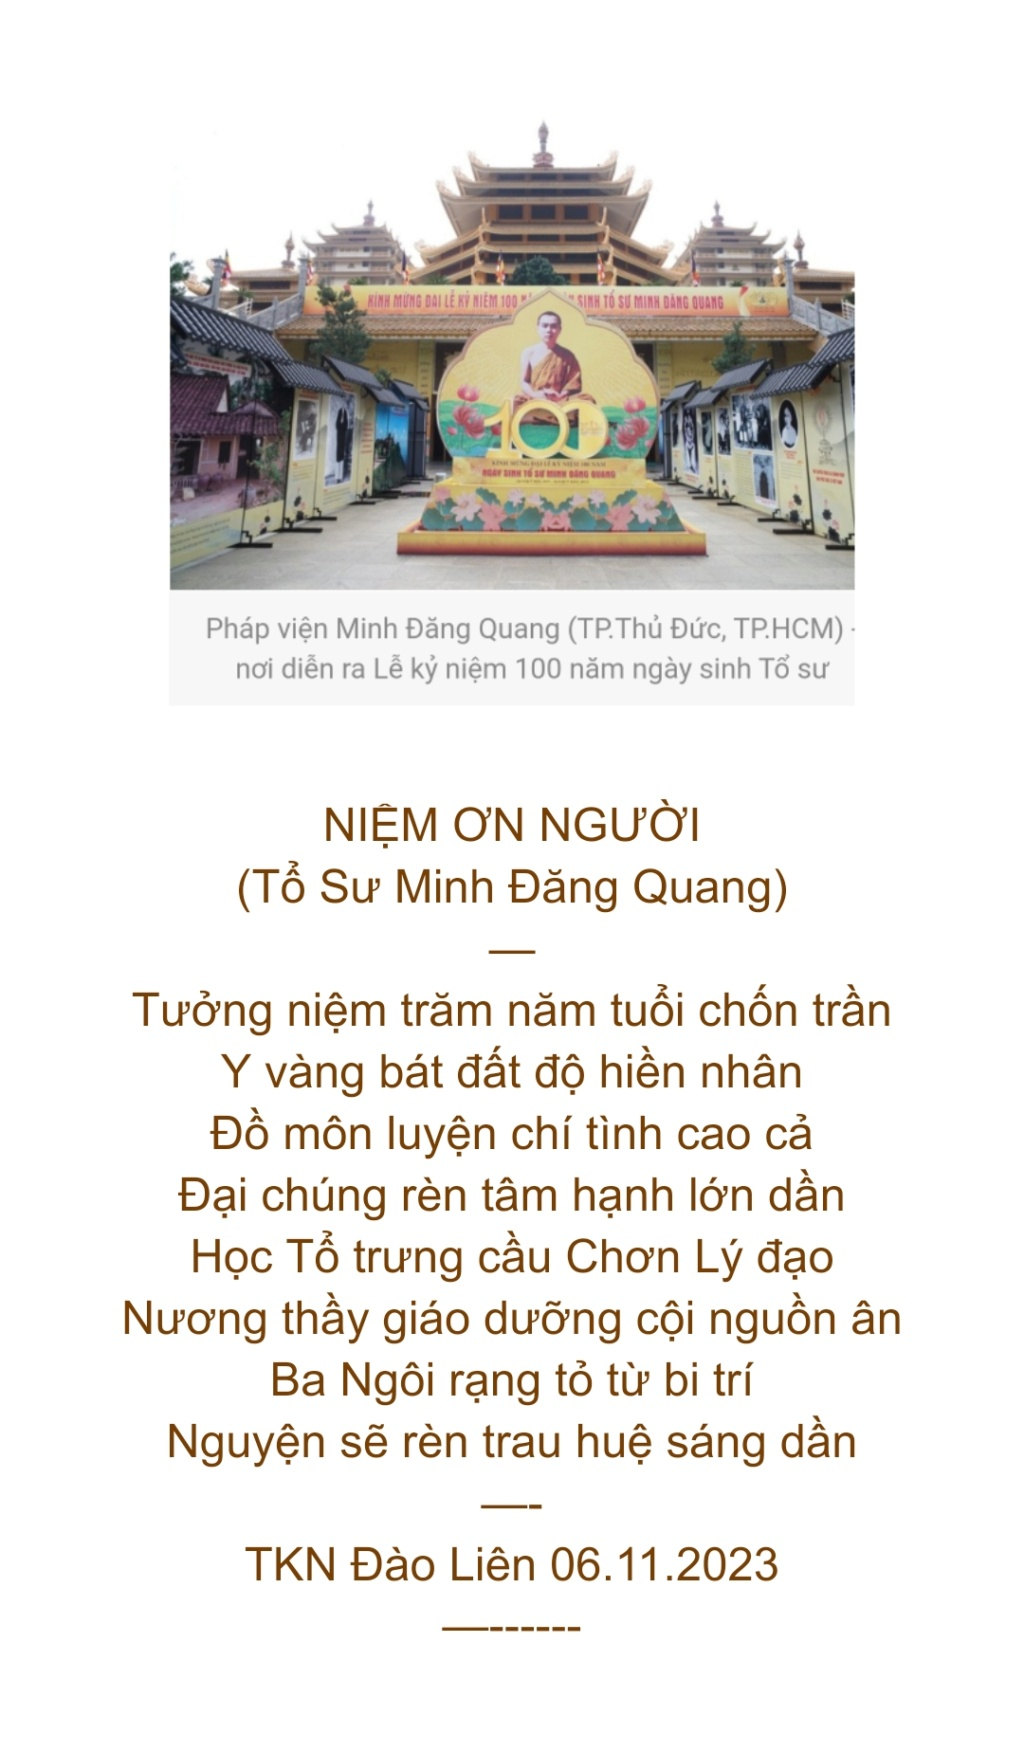 ĐẠI LỄ KN 100 NĂM Ngày Sinh TỔ MINH ĐĂNG QUANG  Scree918